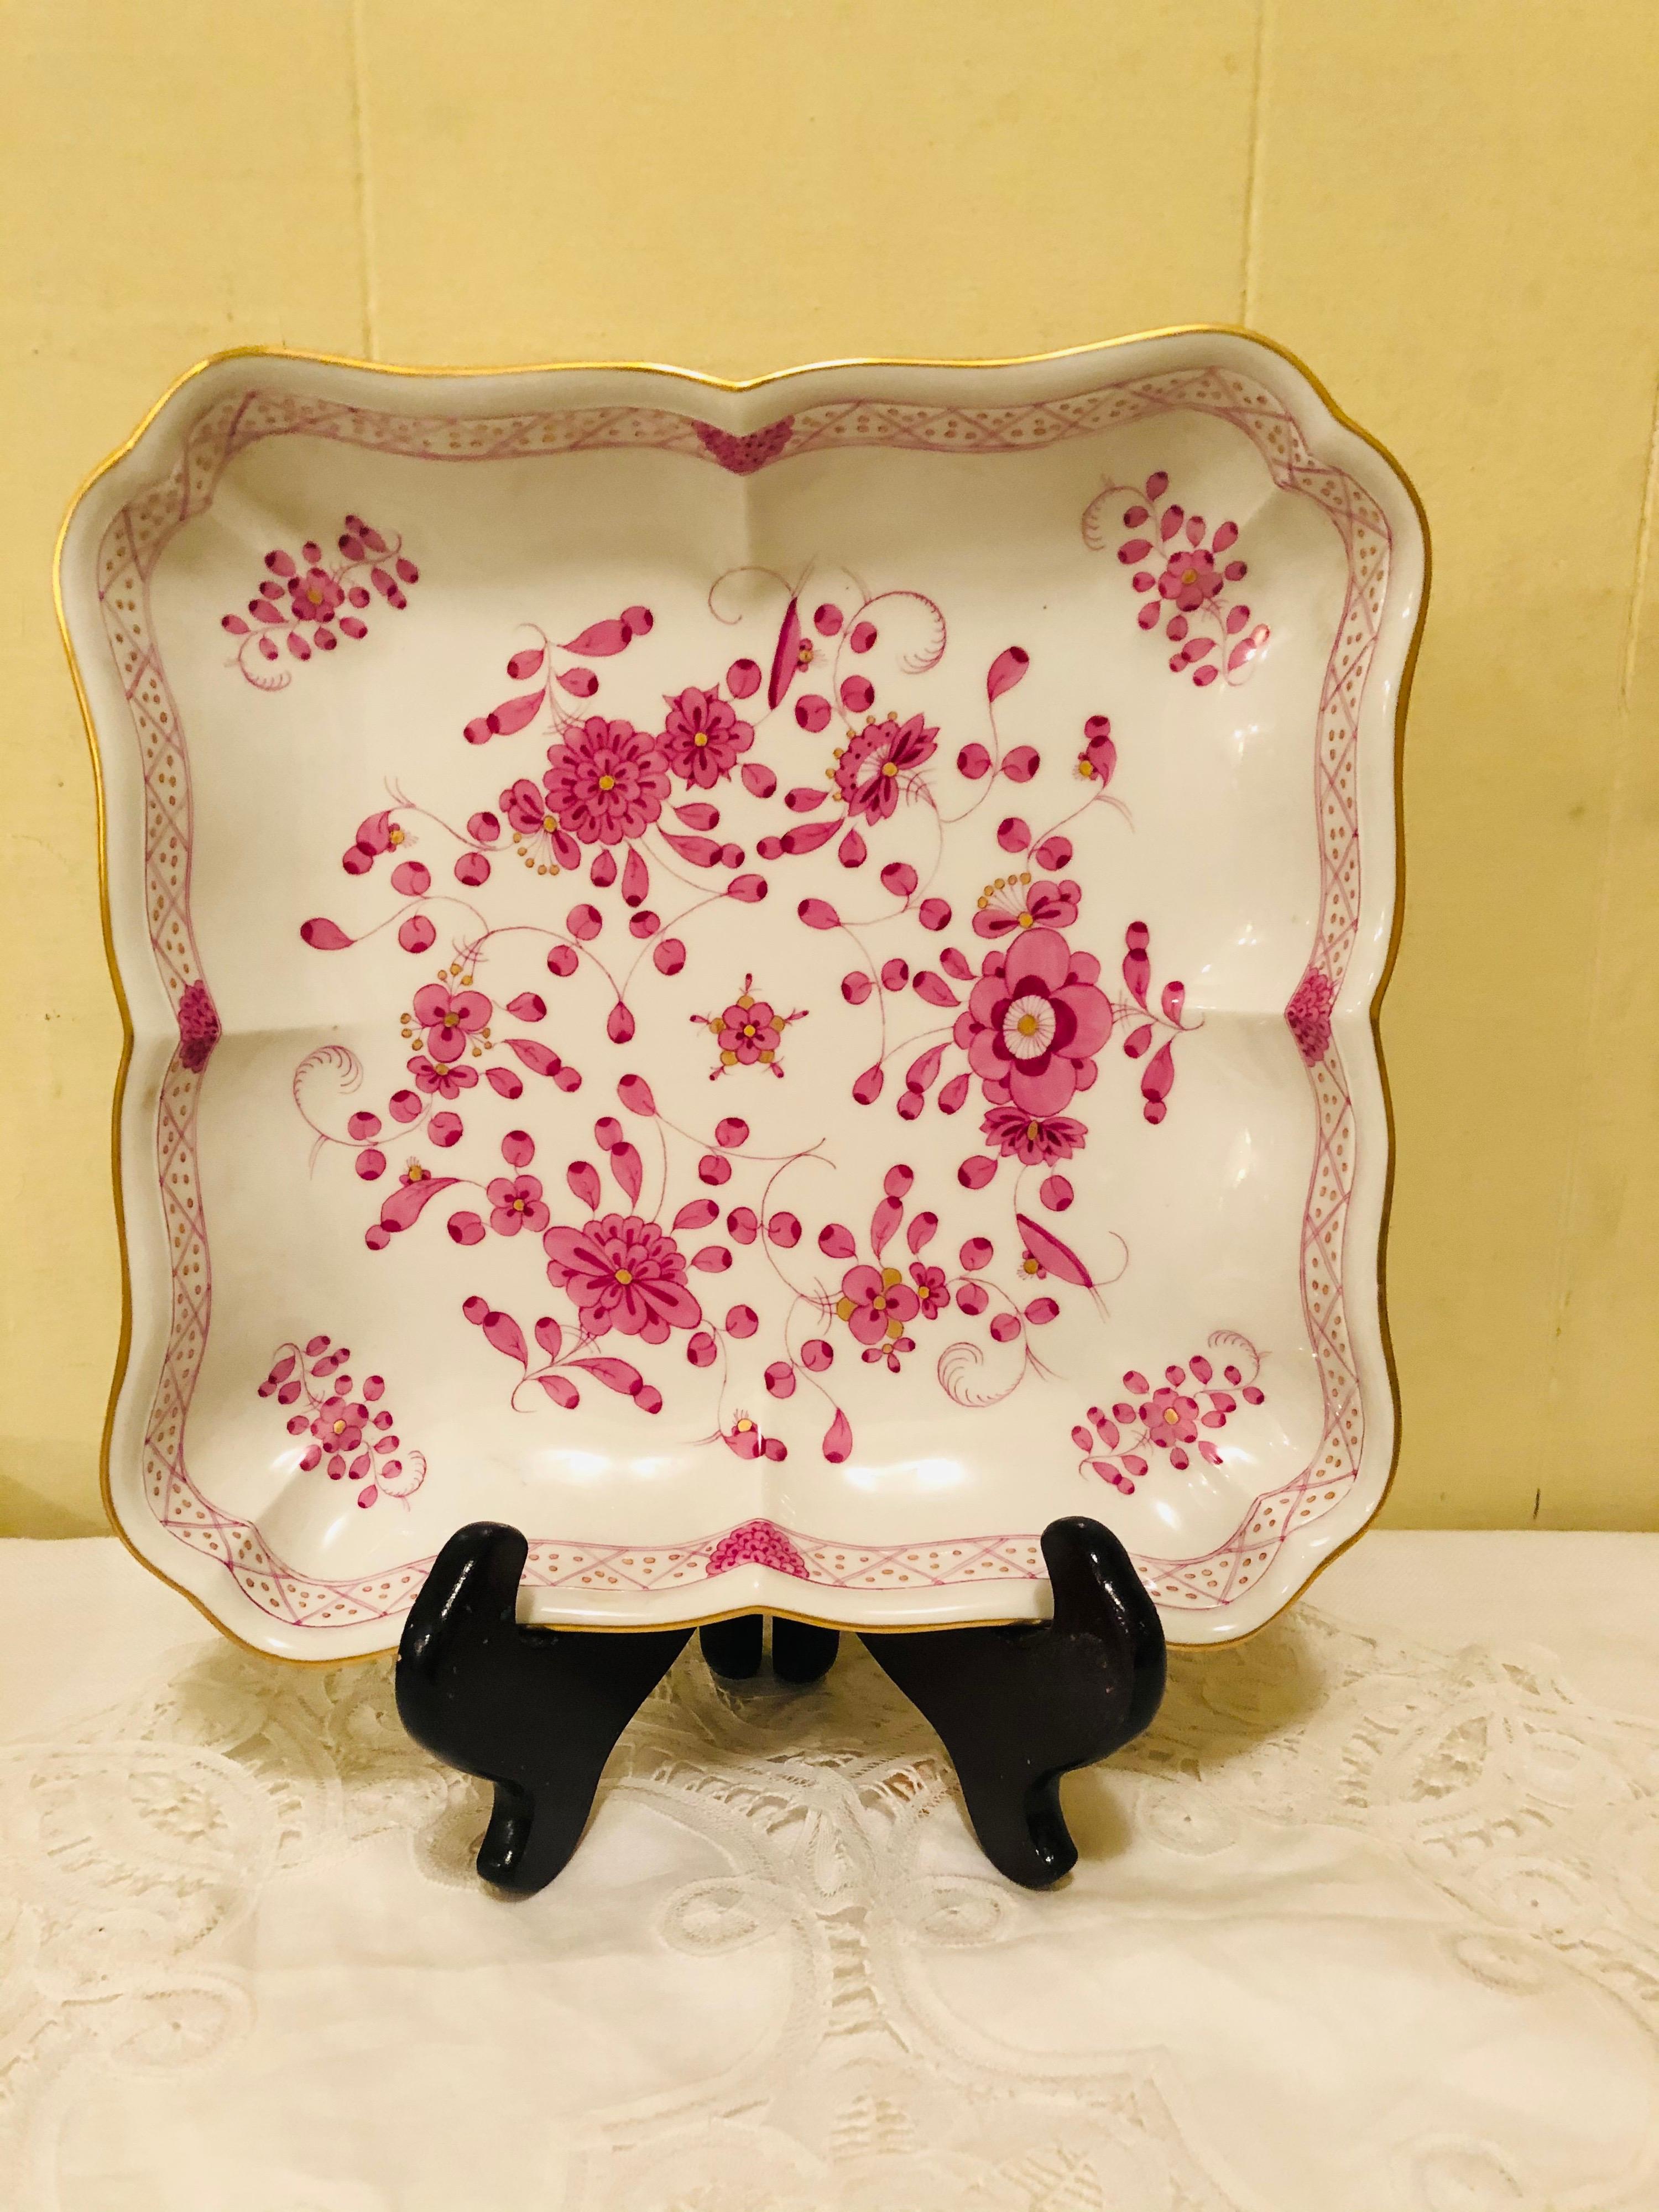 J'aimerais vous offrir ce joli bol indien violet de Meissen dans cette forme carrée inhabituelle.  Il présente des peintures détaillées de fleurs roses avec quelques accents violets et dorés sur un fond blanc. Le détail de la peinture sur ce bol est